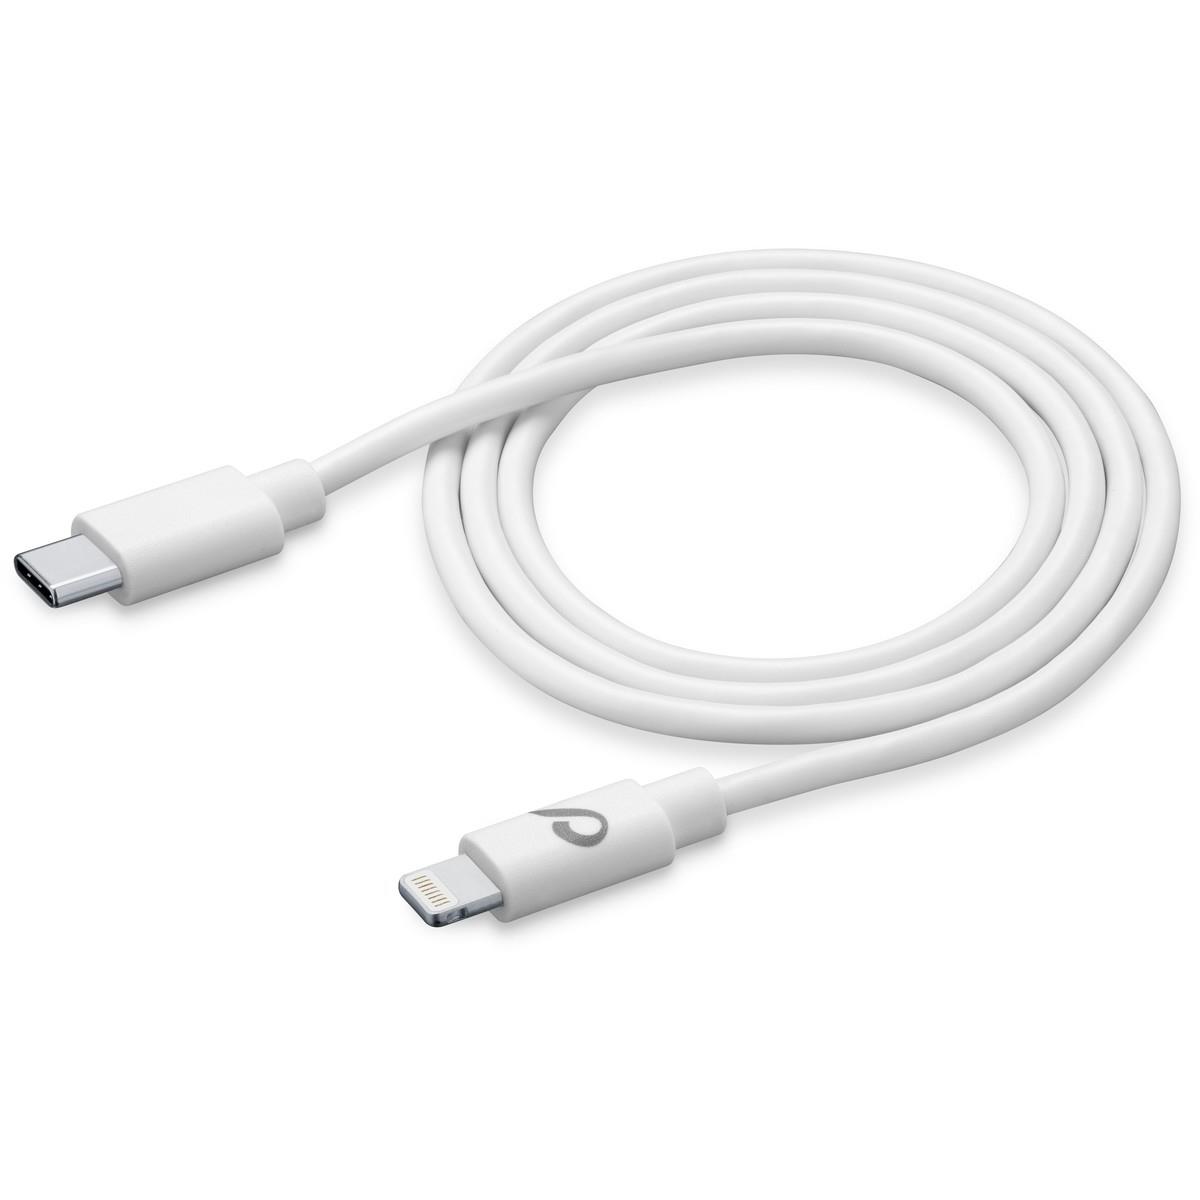 Lade- und Datenkabel 120cm USB Type-C auf Apple Lightning